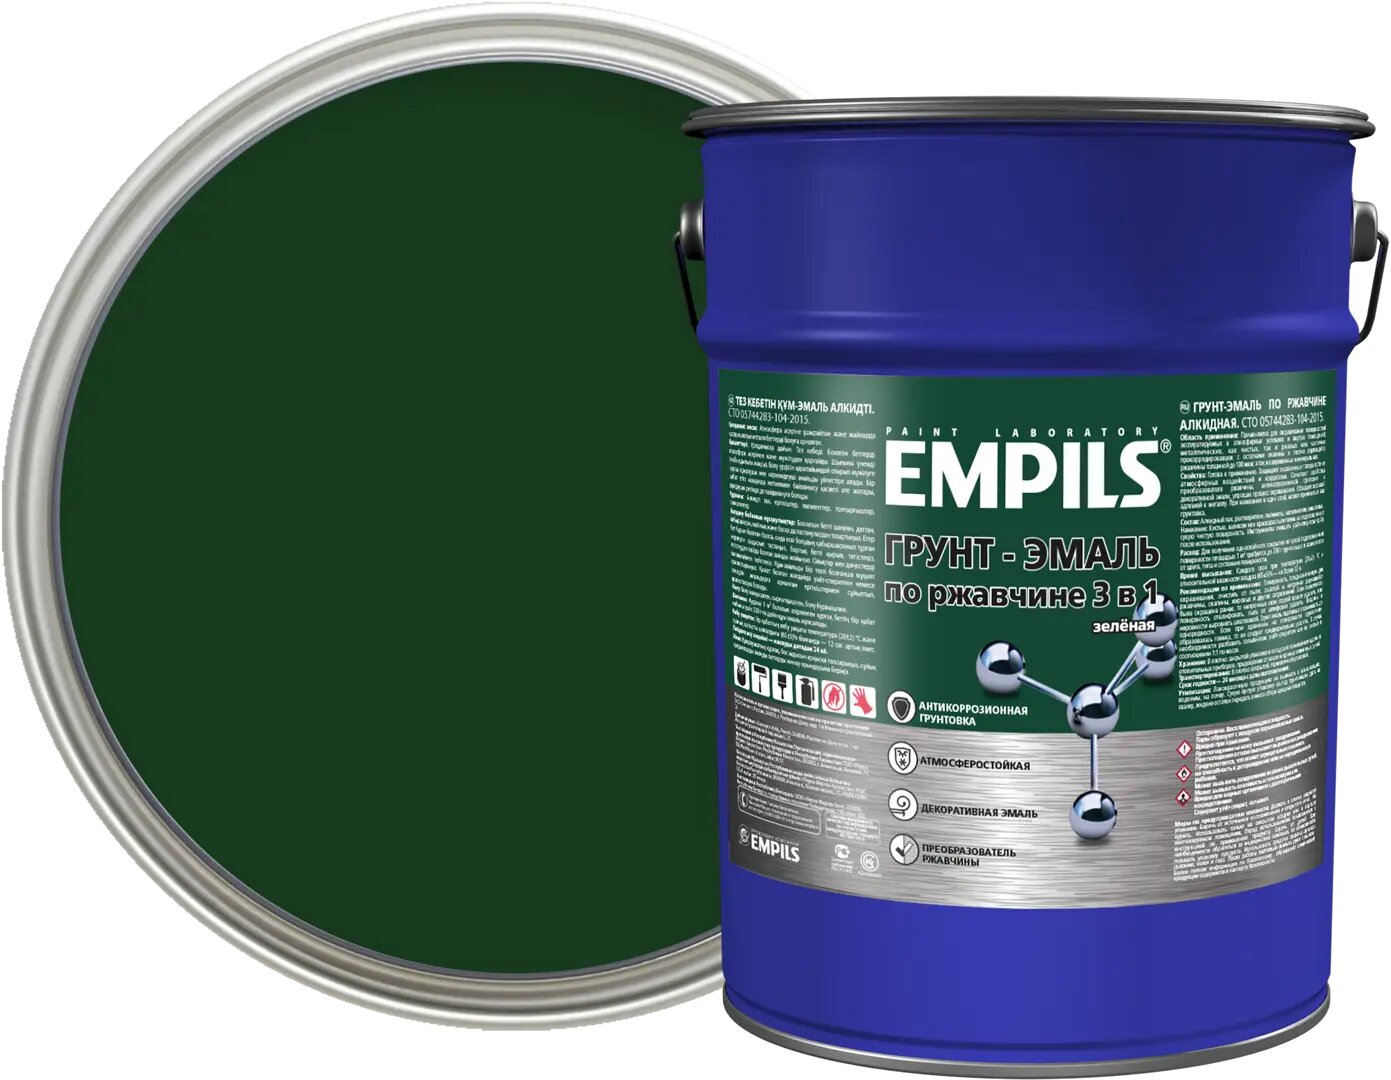 Грунт-эмаль по ржавчине 3 в 1 Empils PL цвет зеленый 5 кг